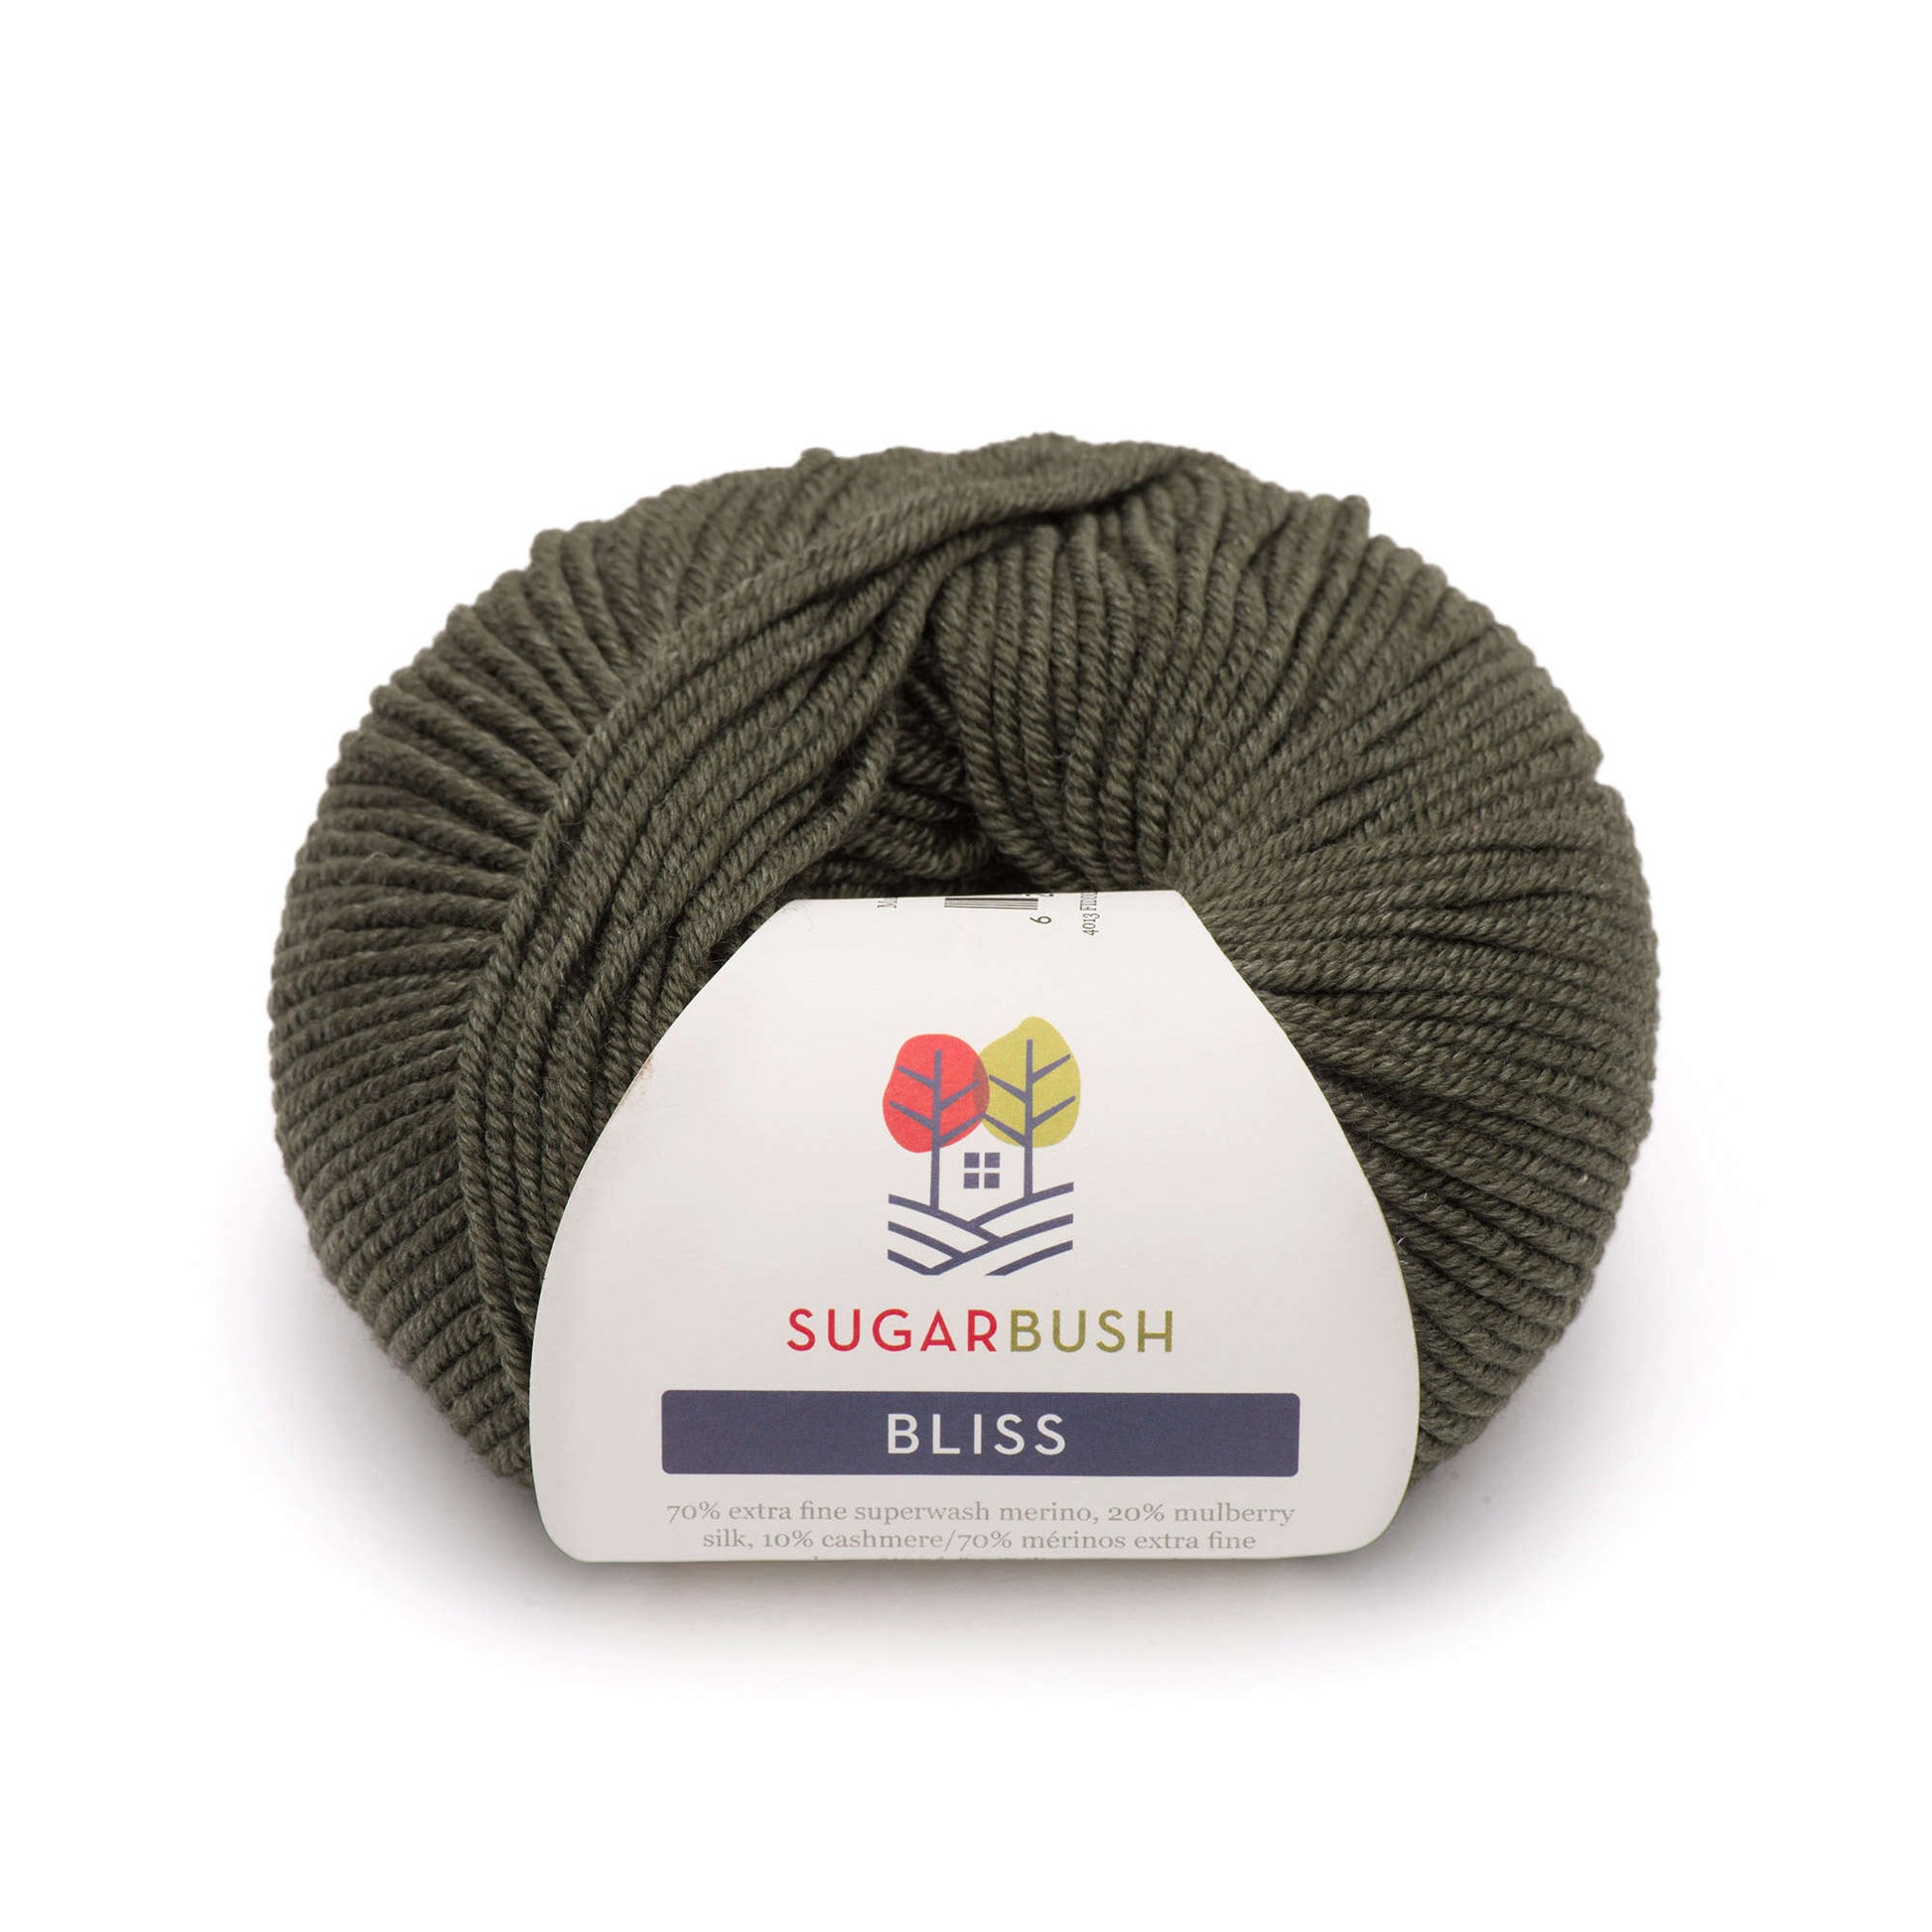 Sugar Bush Bliss Yarn - Discontinued